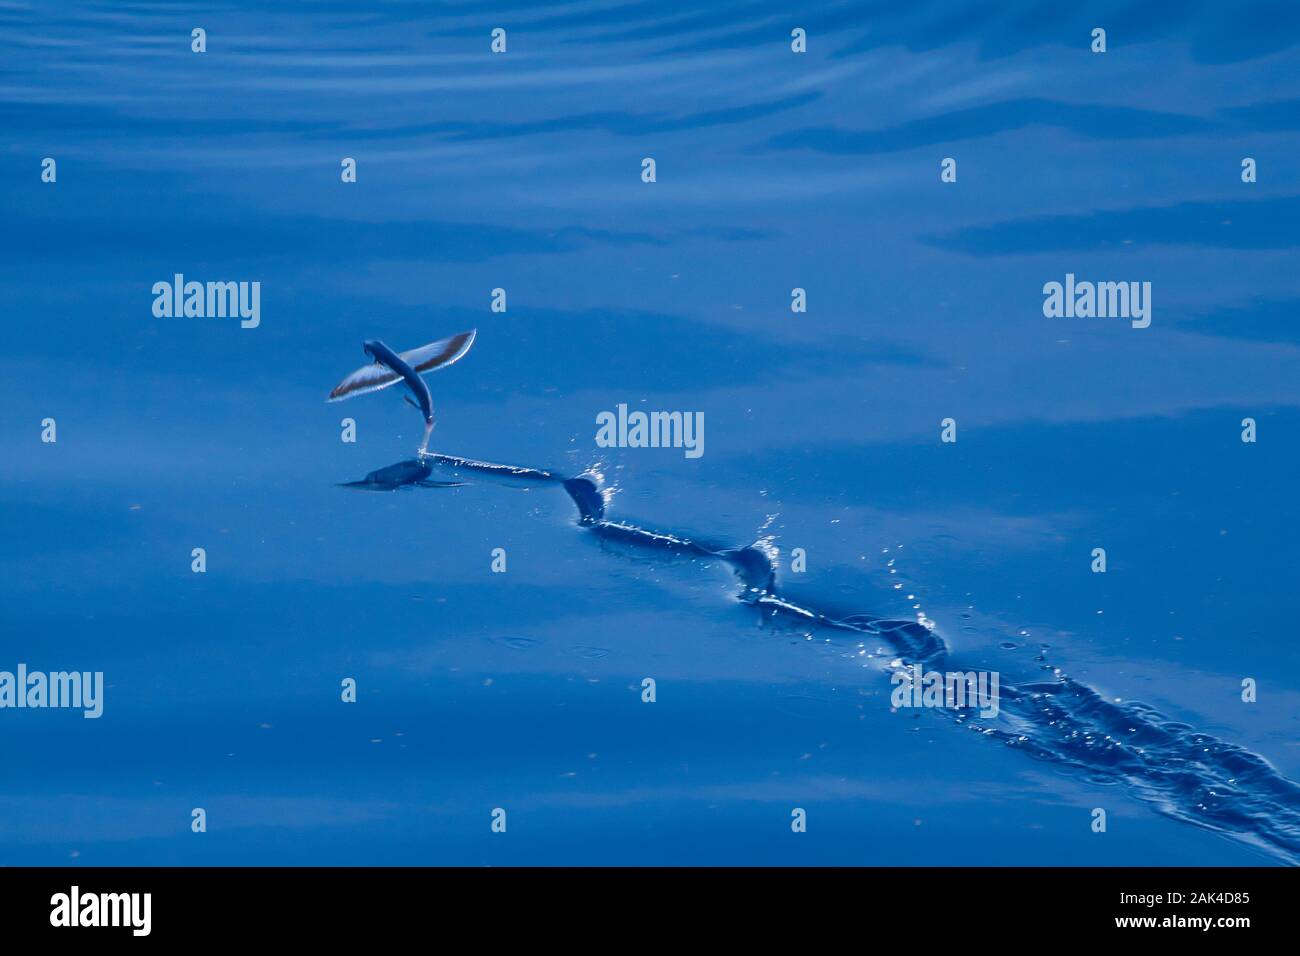 Les poissons volants survolant les eaux calmes de l'océan Pacifique, photographié d'un navire de croisière Banque D'Images